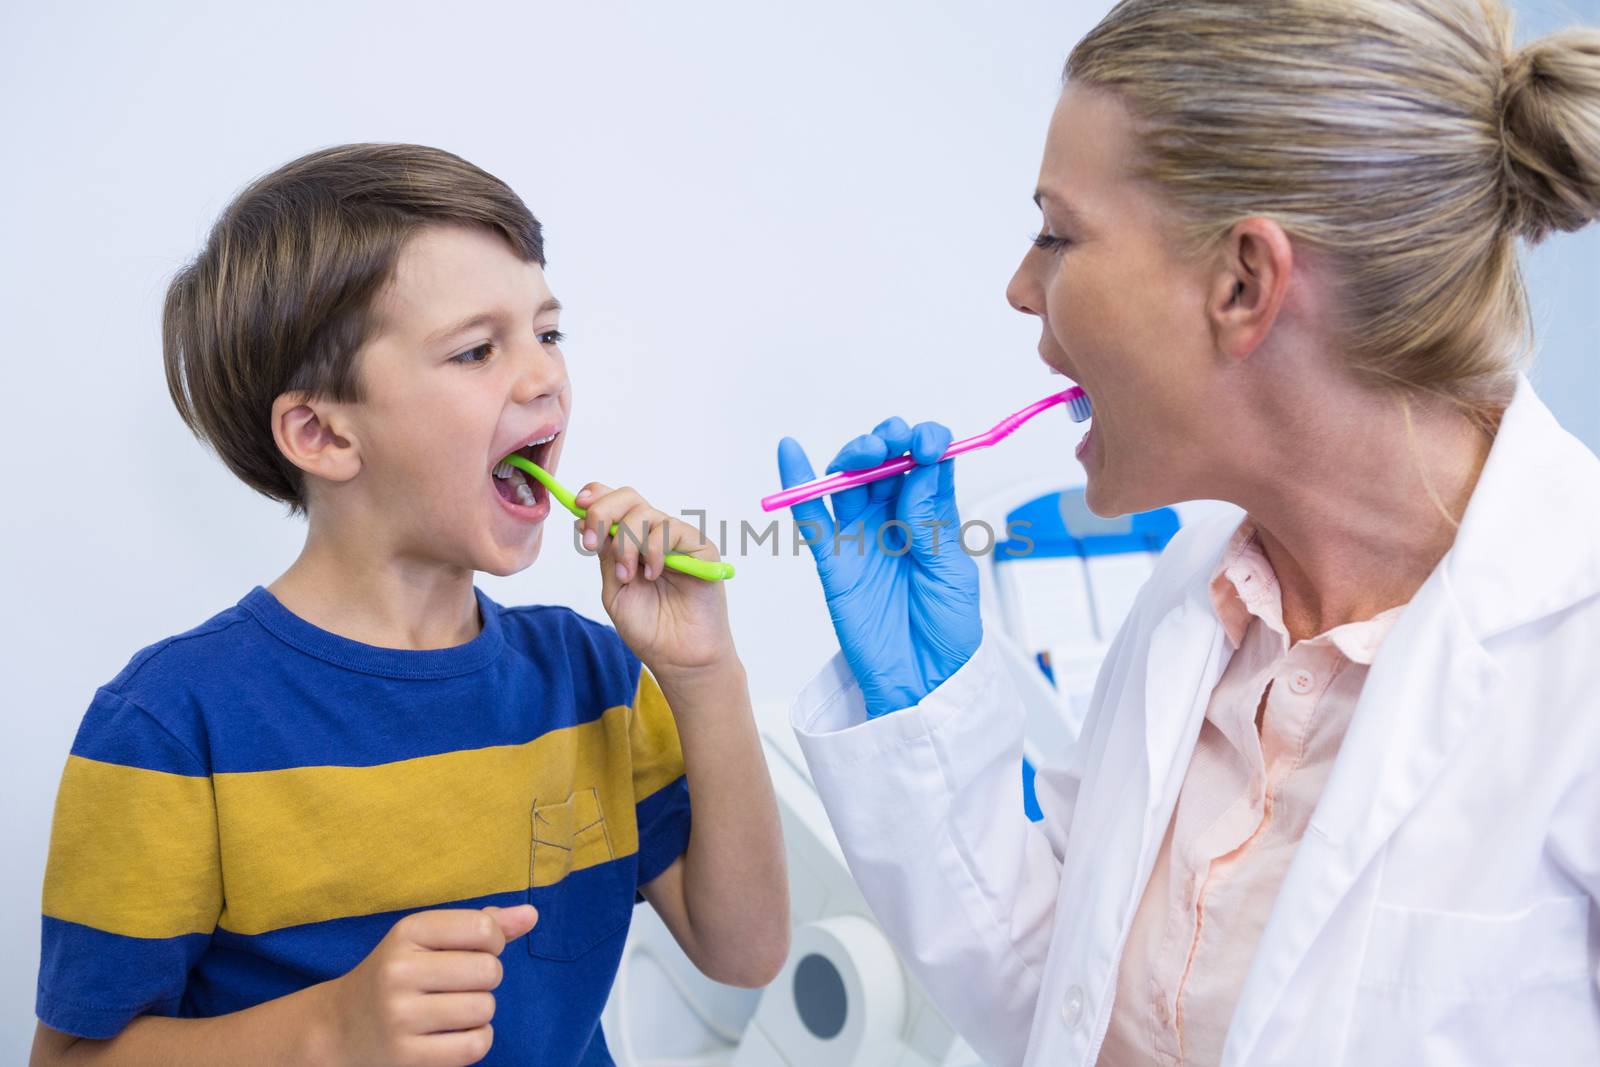 Dentist and boy brushing teeth against wall by Wavebreakmedia